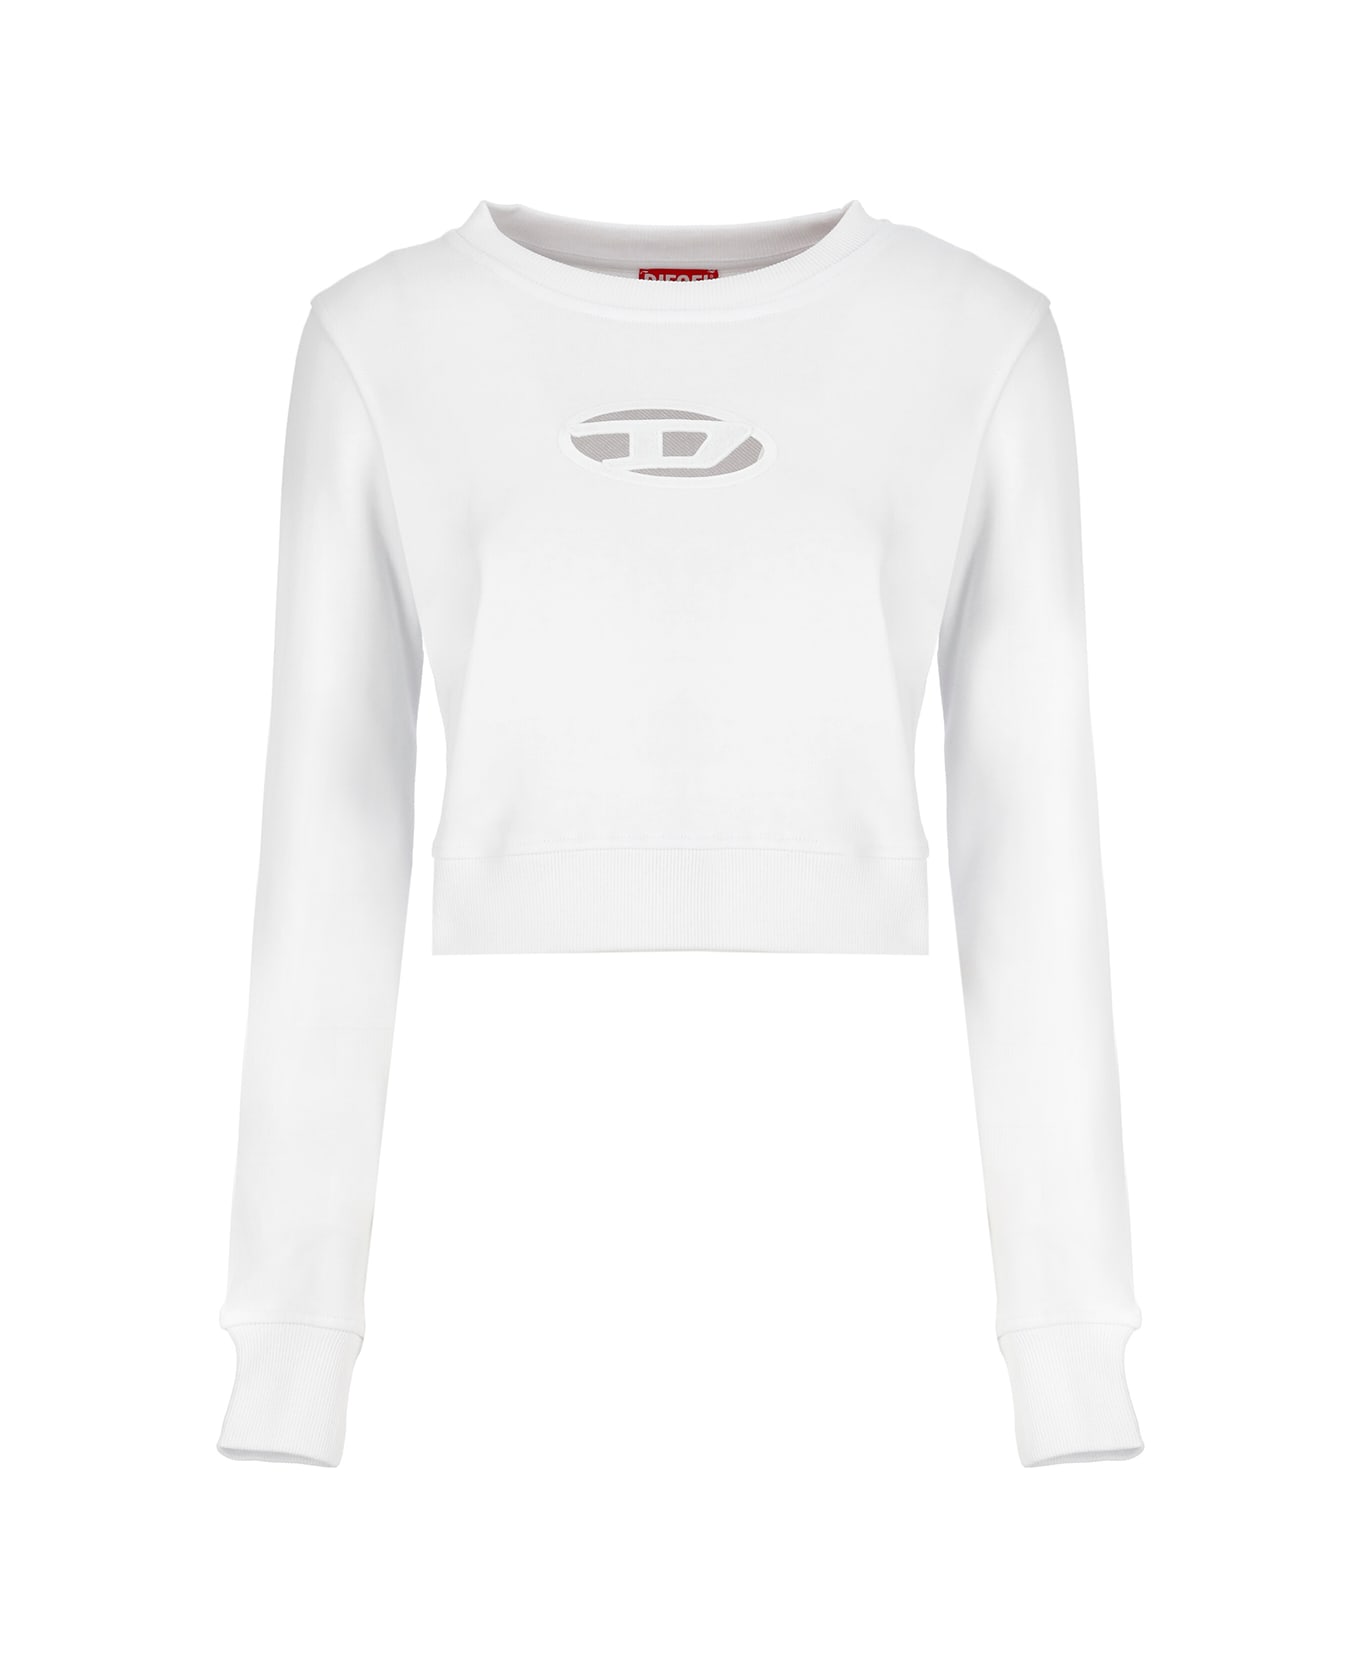 Diesel F-slimmy-od Sweatshirt - White フリース